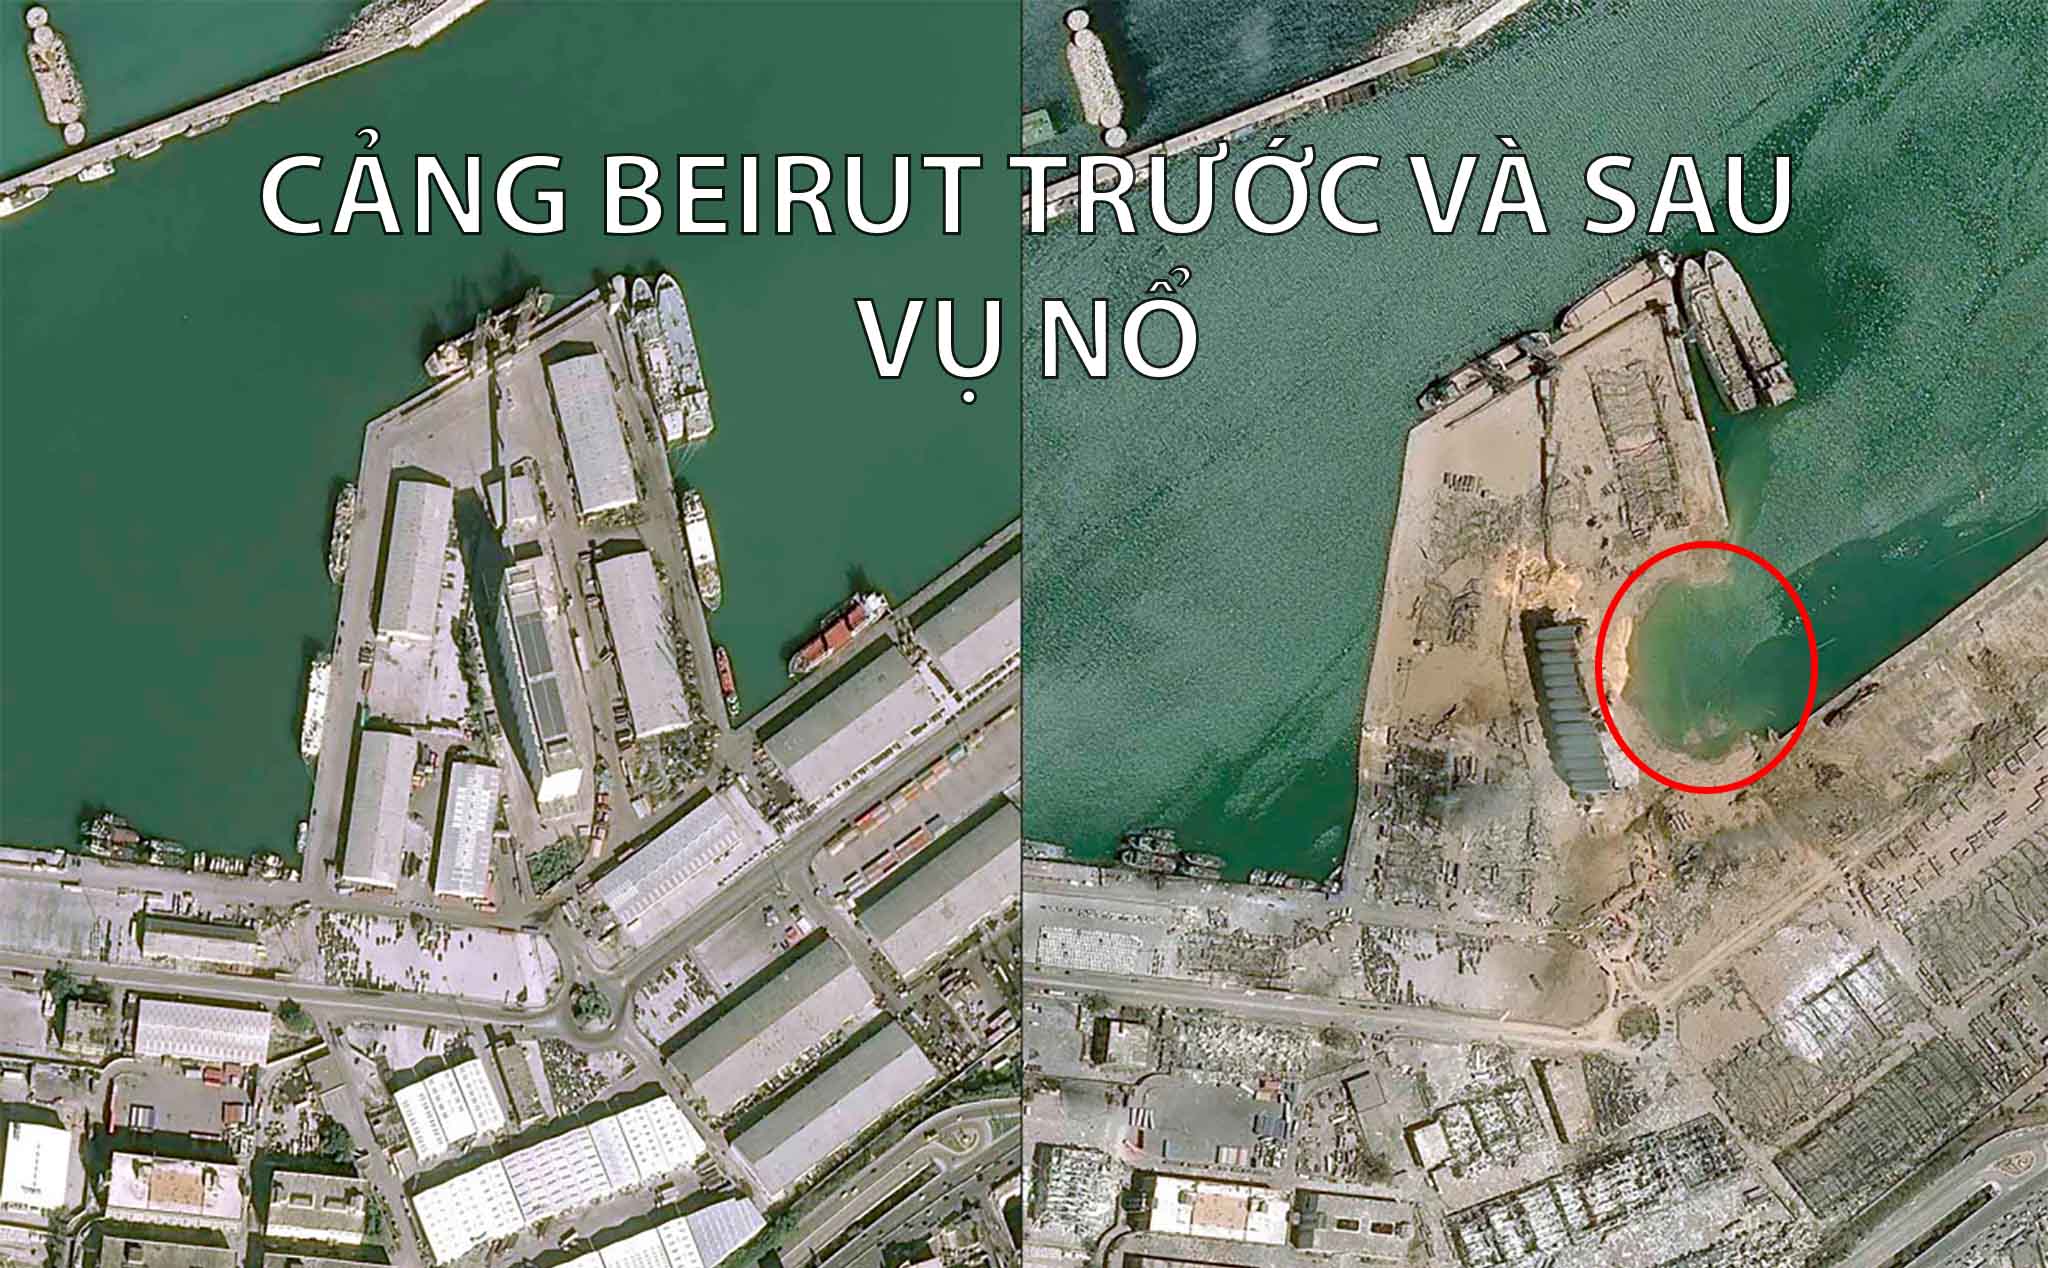 Tại sao amoni nitrat lại phát nổ tại cảng Beirut và sức công phá khủng khiếp đến vậy?